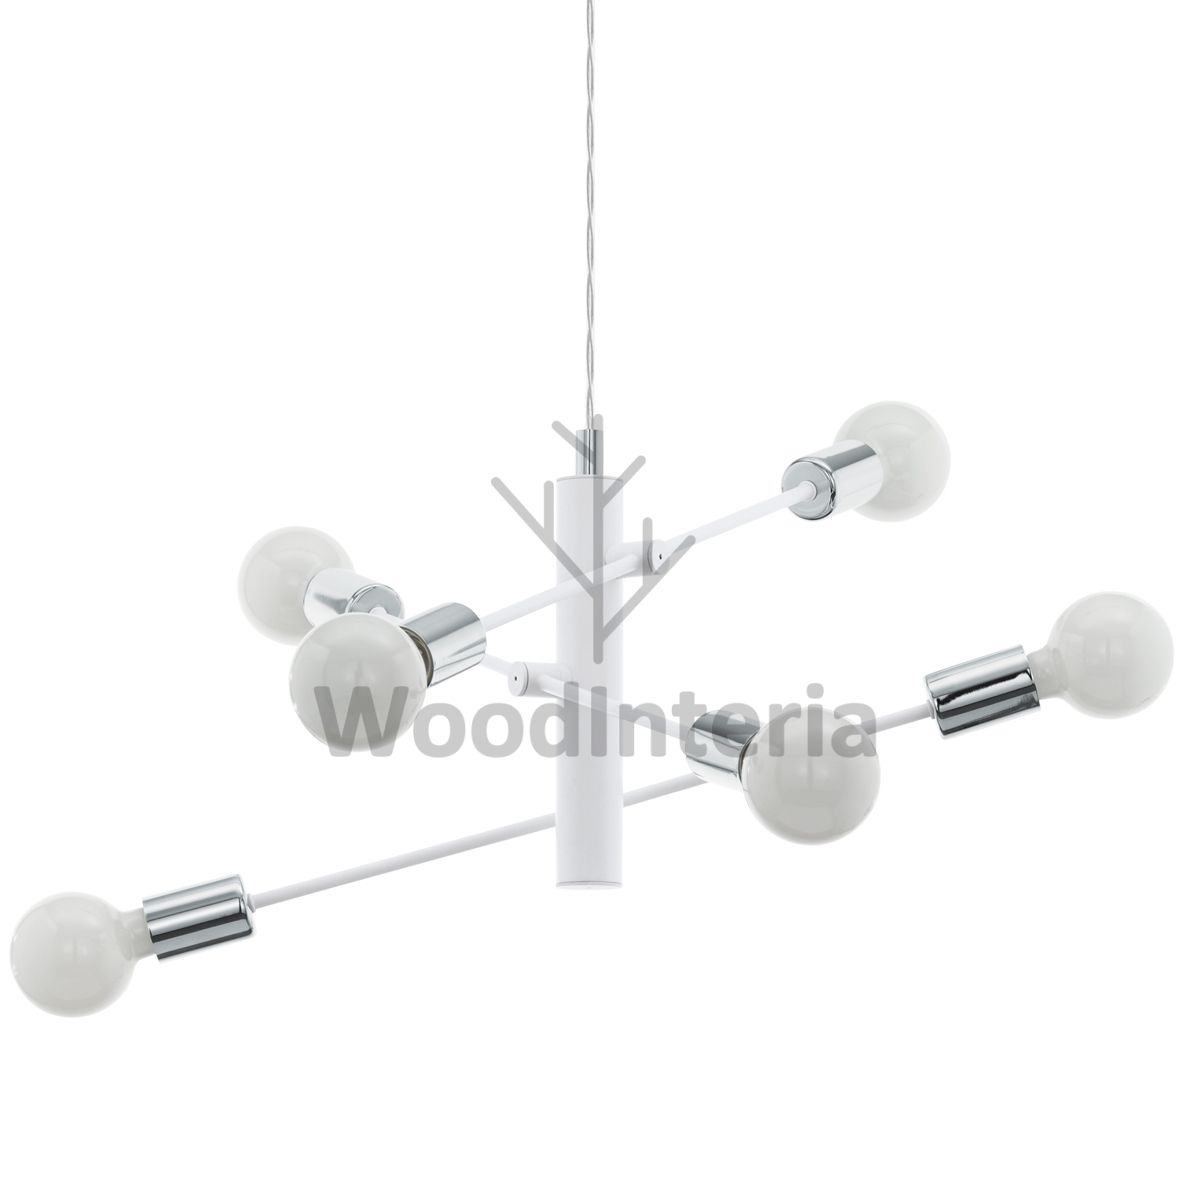 фото подвесной светильник white abstraction 6 в скандинавском интерьере лофт эко | WoodInteria